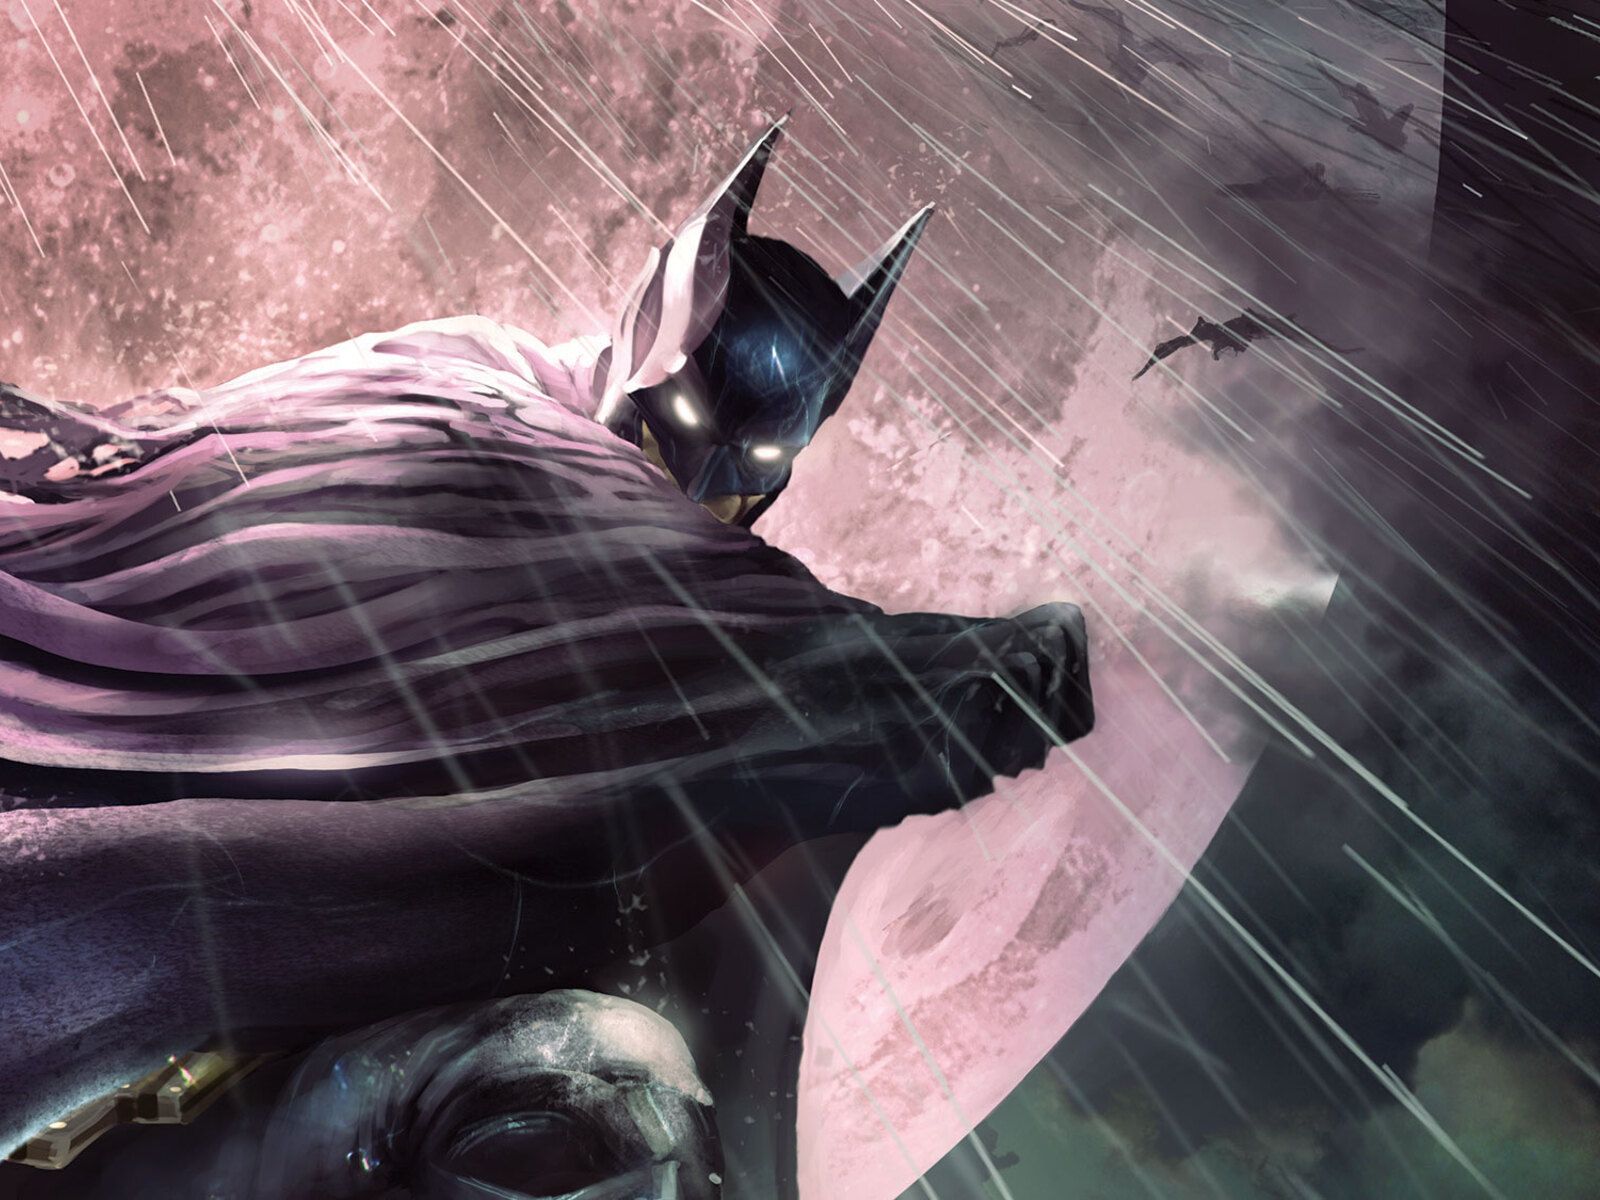 Batman Gotham Knight Arts New 1600x1200 Resolution HD 4k